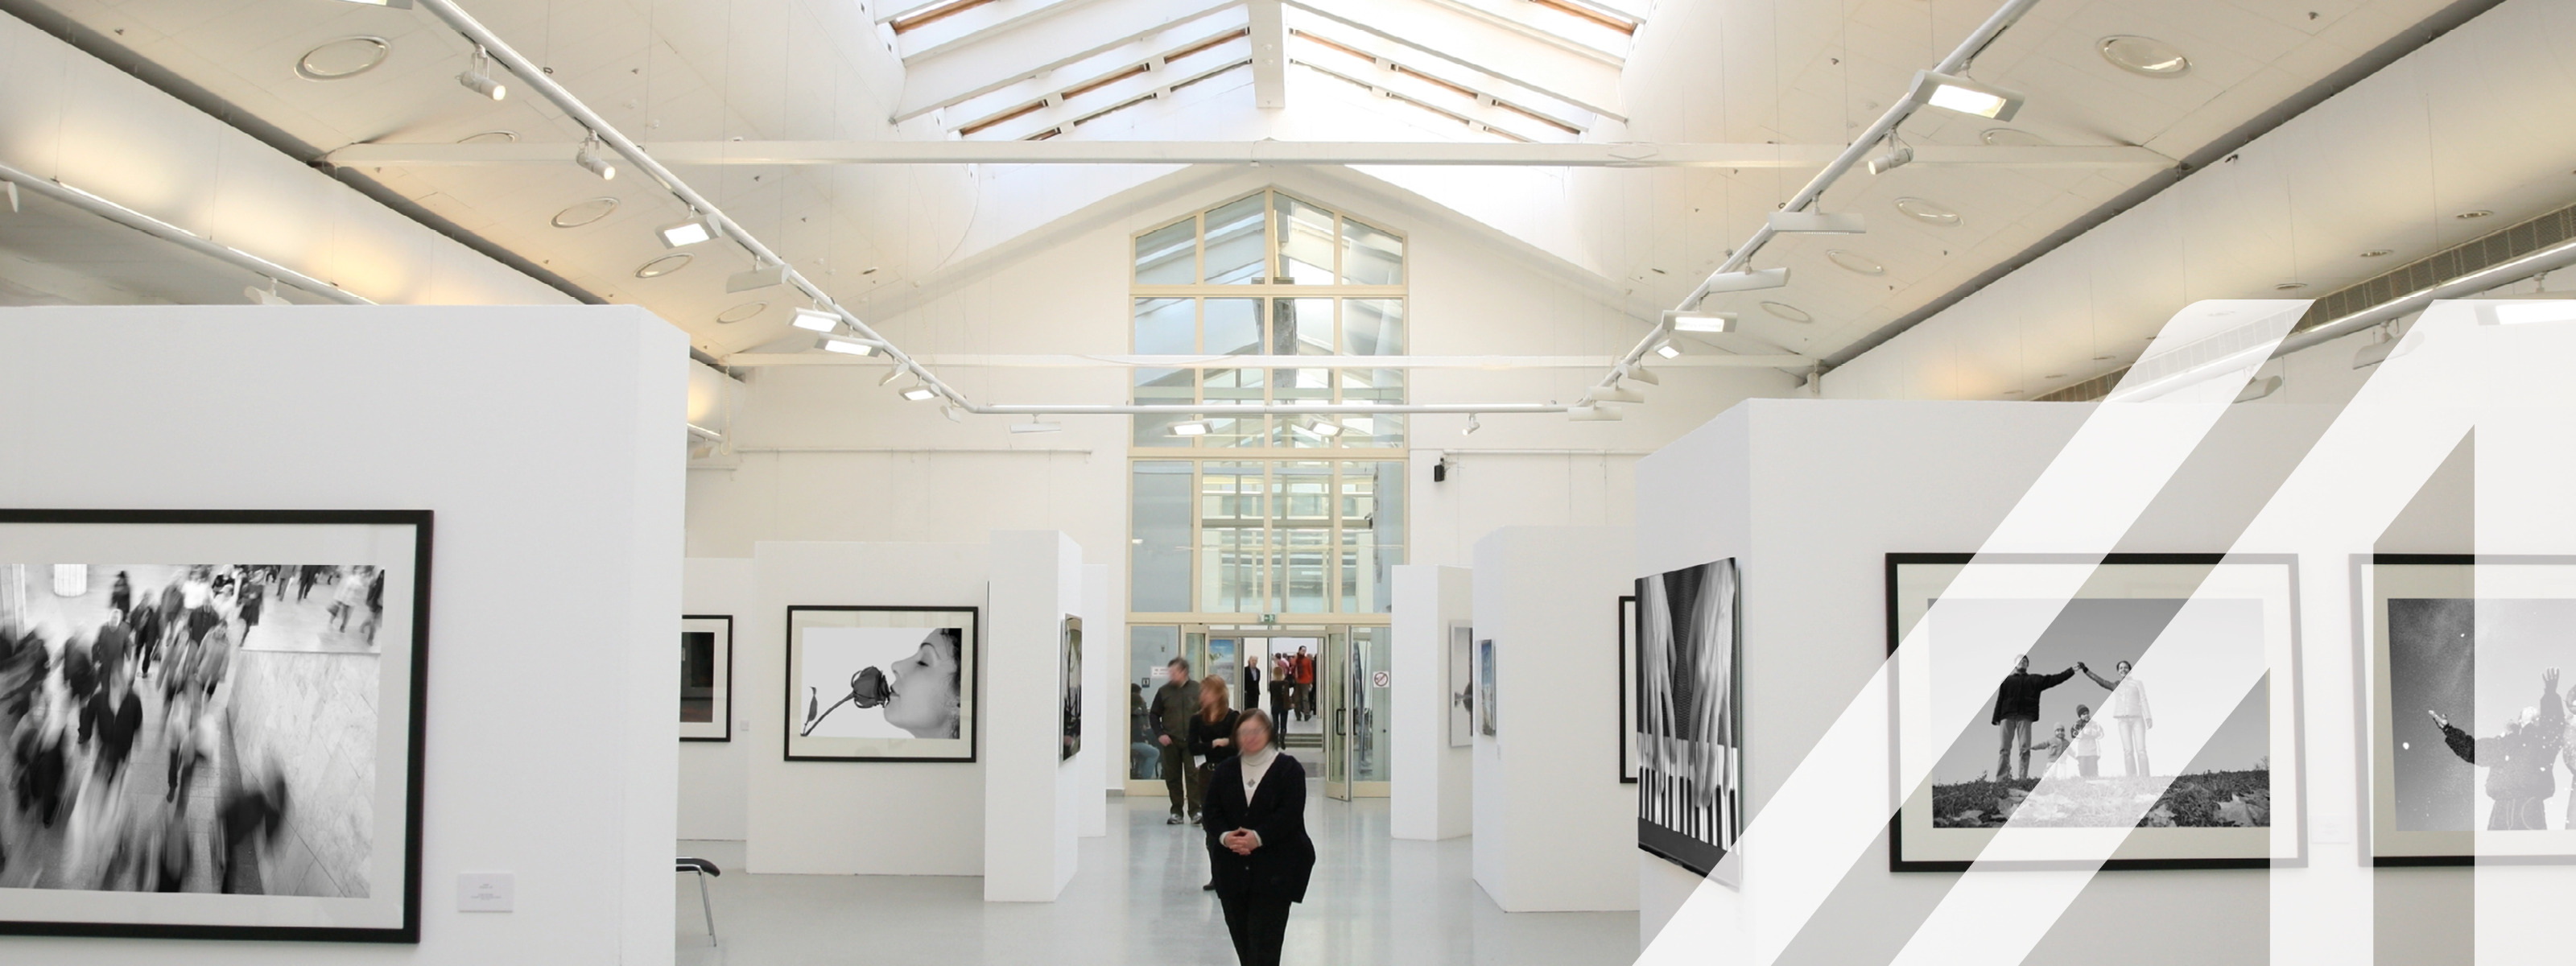 Schwarz-Weiß-Fotoausstellung in einer weißen Galerie mit Deckenfenstern